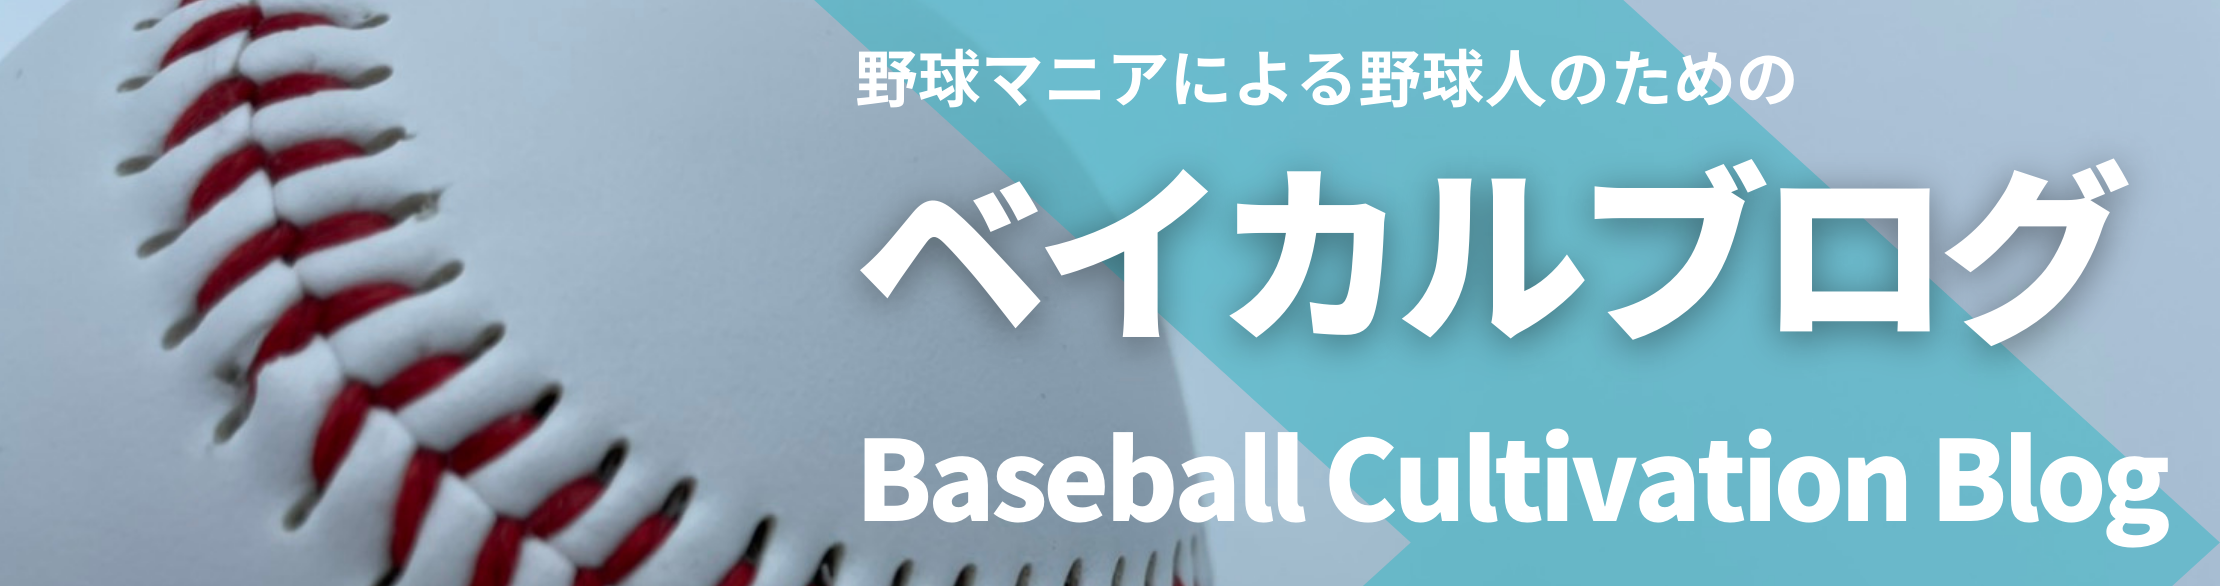 ベイカルブログ Baseball Cultivation